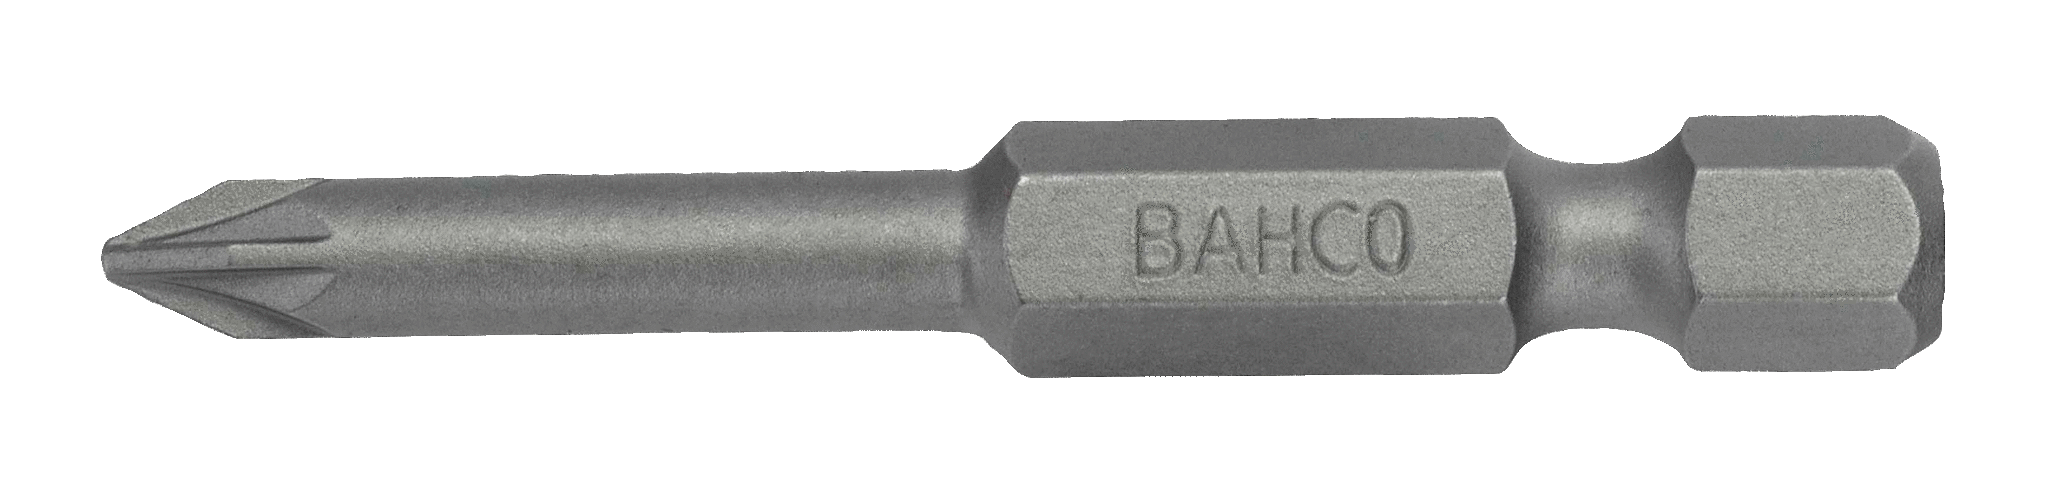 картинка Стандартные биты для отверток Pozidriv, 50 мм BAHCO 59S/50PZ1 от магазина "Элит-инструмент"